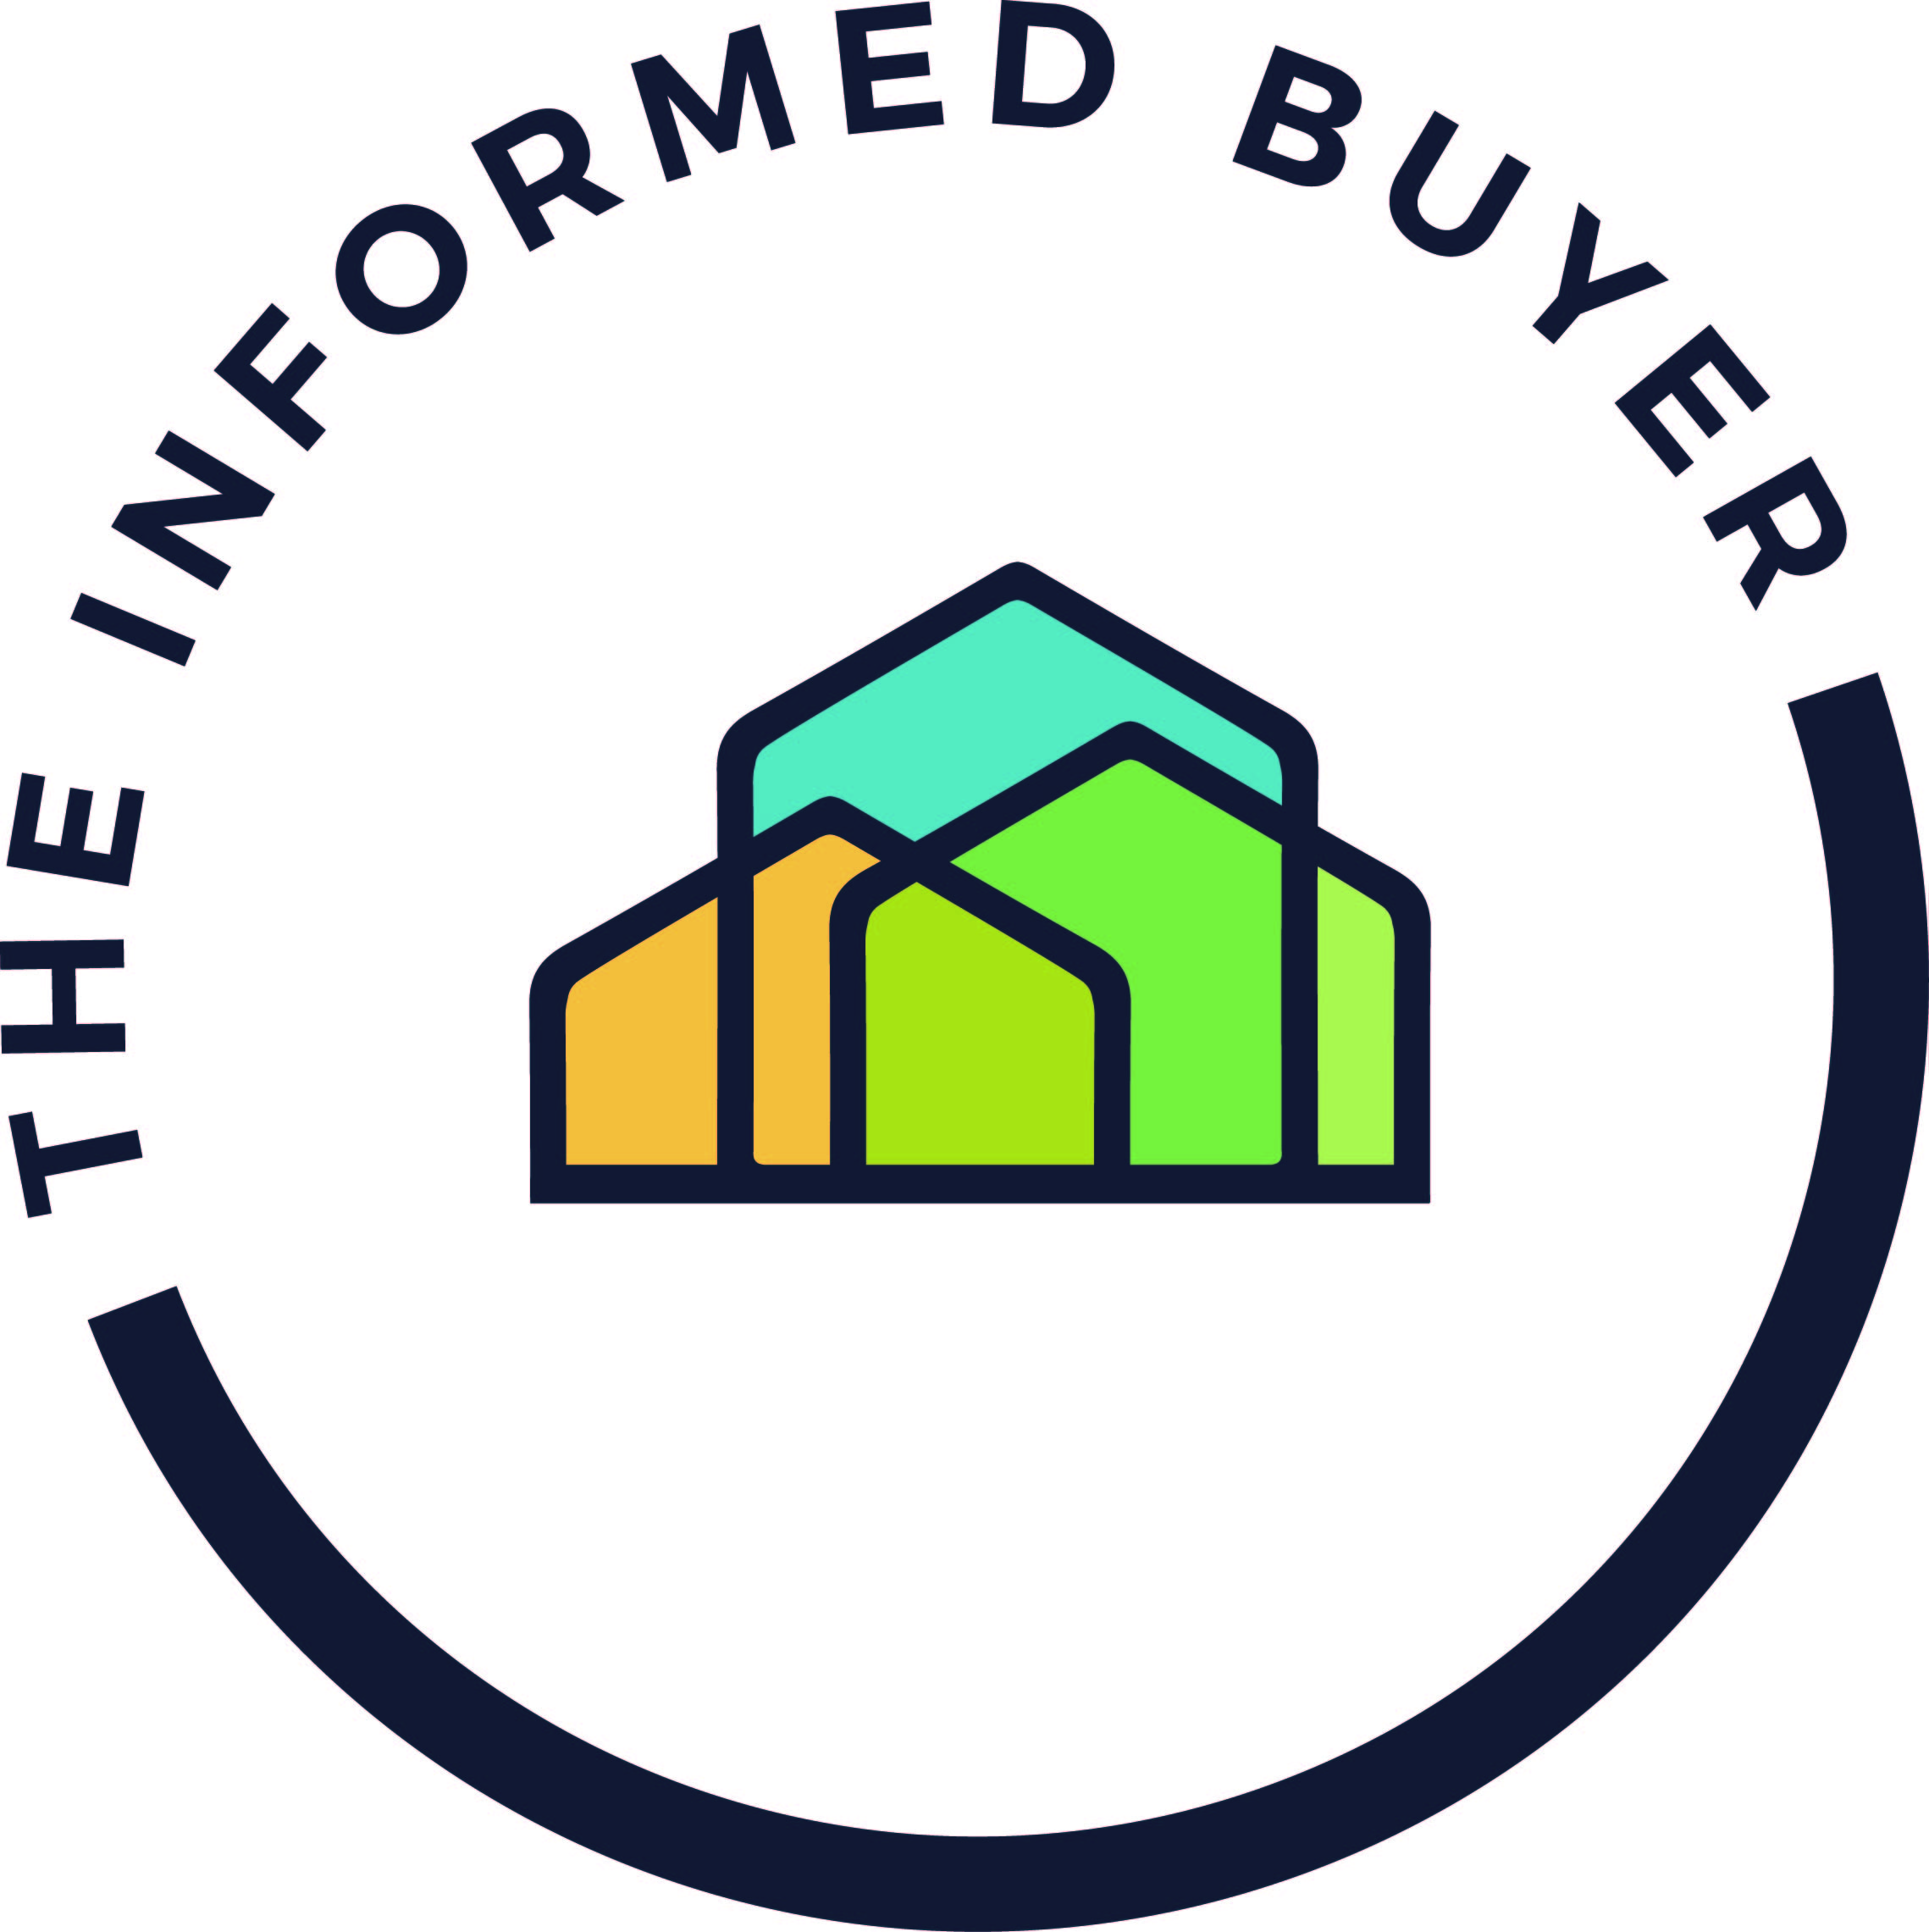 The Informed Buyer